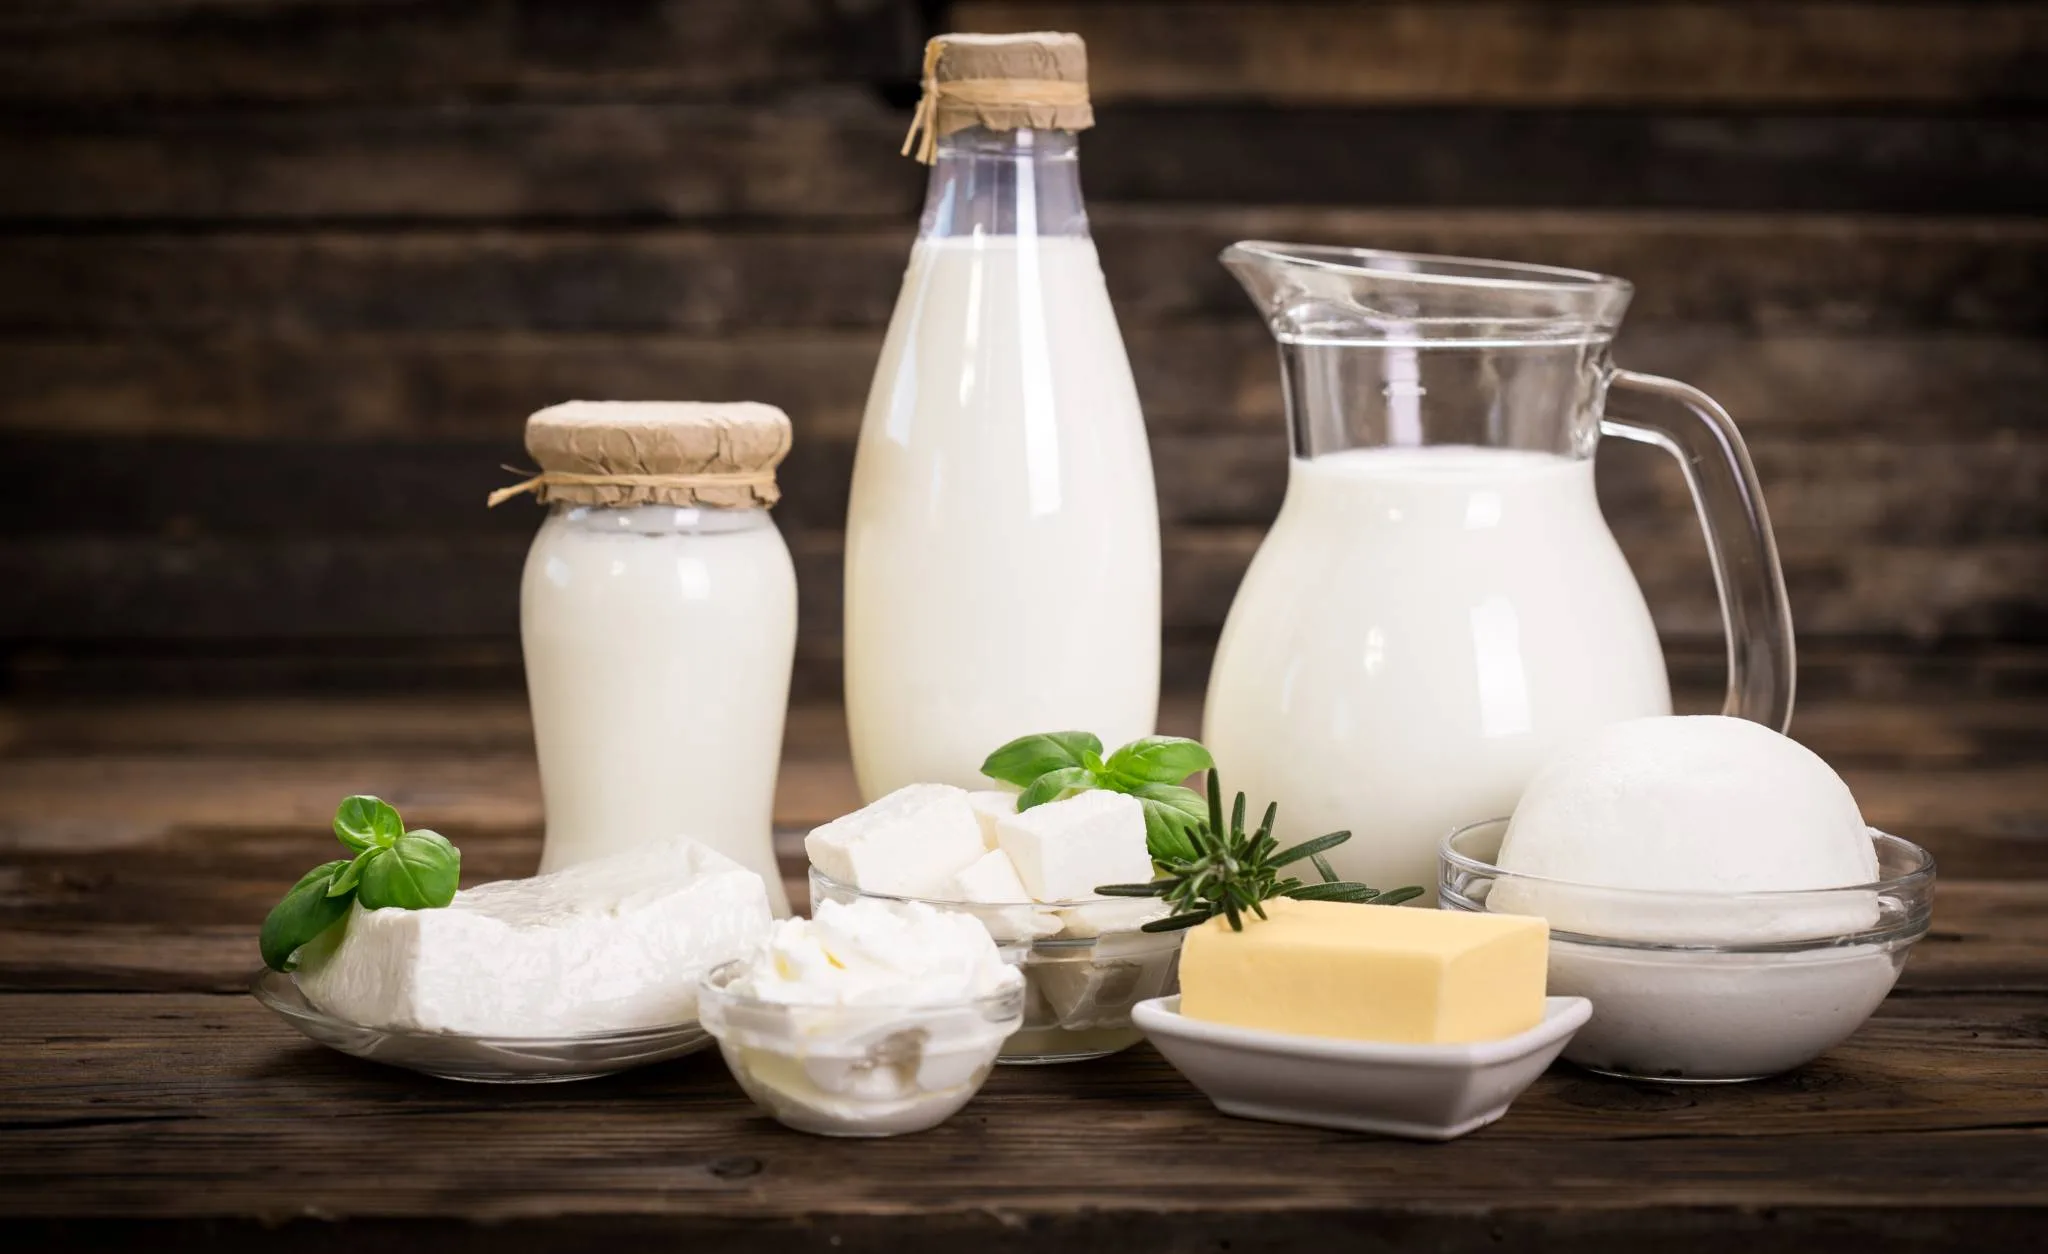   5 فوائد مذهلة يمنحك إياها الحليب عند تناوله قبل النوم.. تعرف عليها 